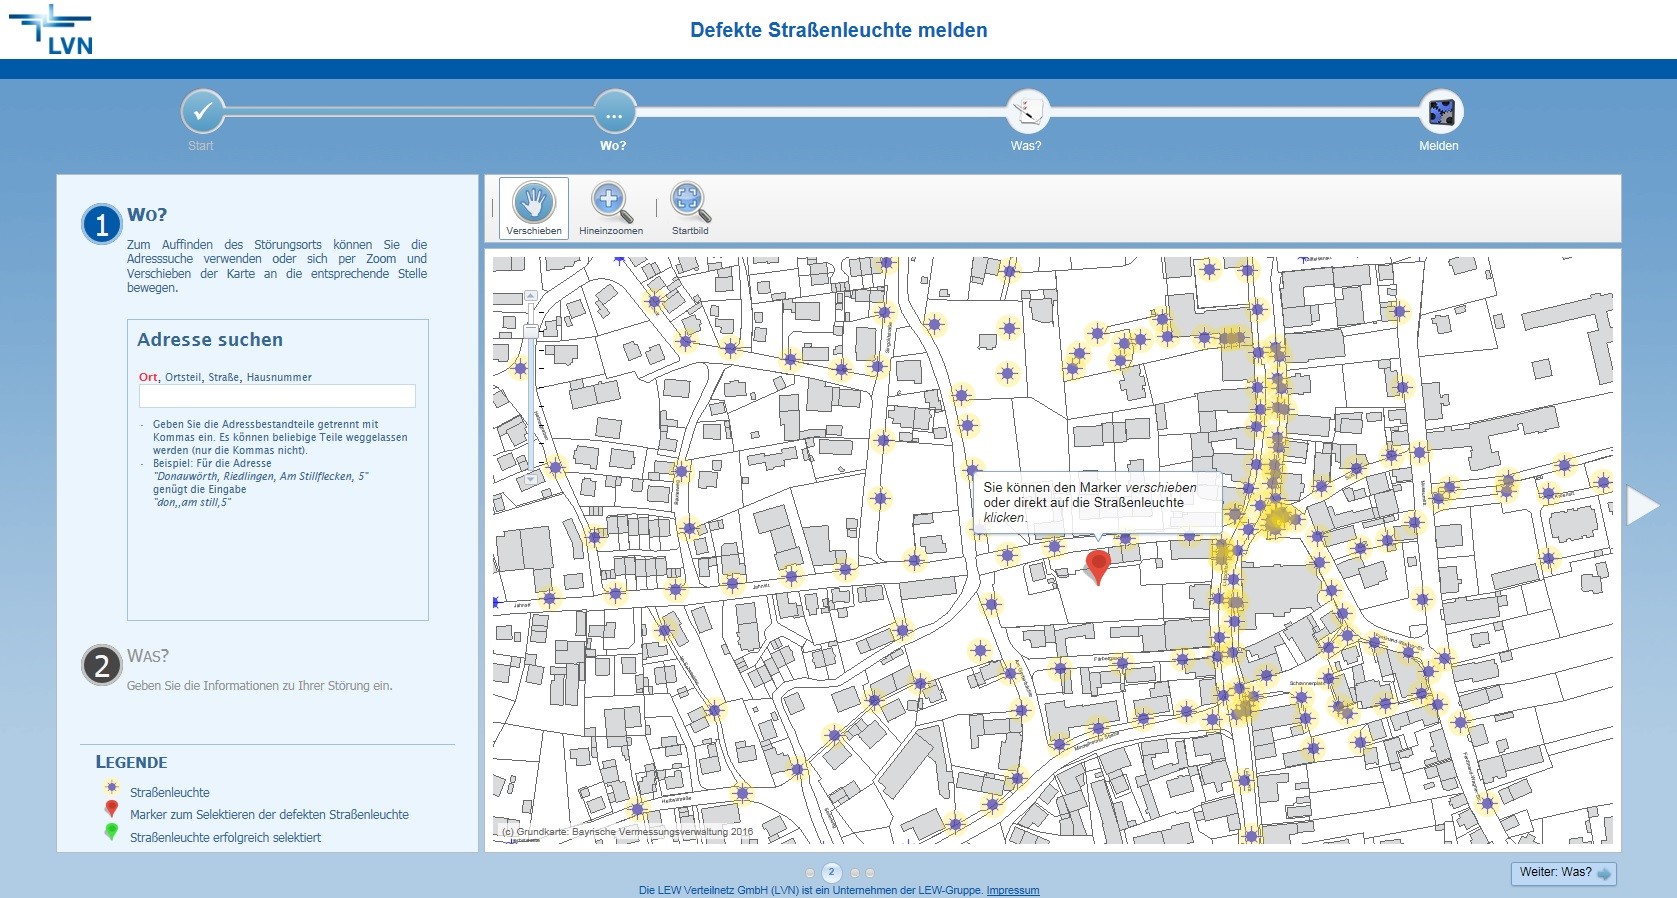 Dieses Online-Tool erleichtert es Kommunen, defekte Straßenleuchten zu ermitteln.